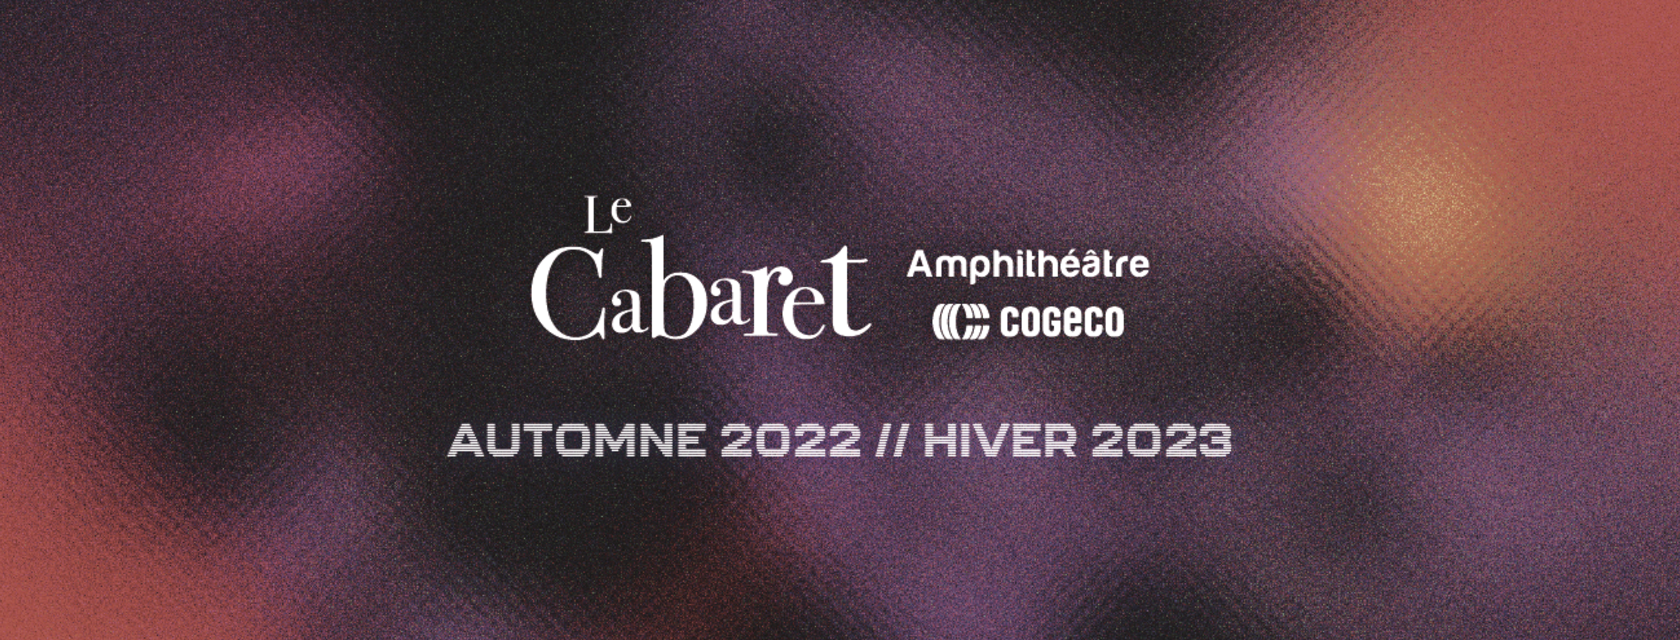 The Cabaret de l'Amphithéâtre Cogeco announces the addition of six shows to its fall-winter 2022-2023 program